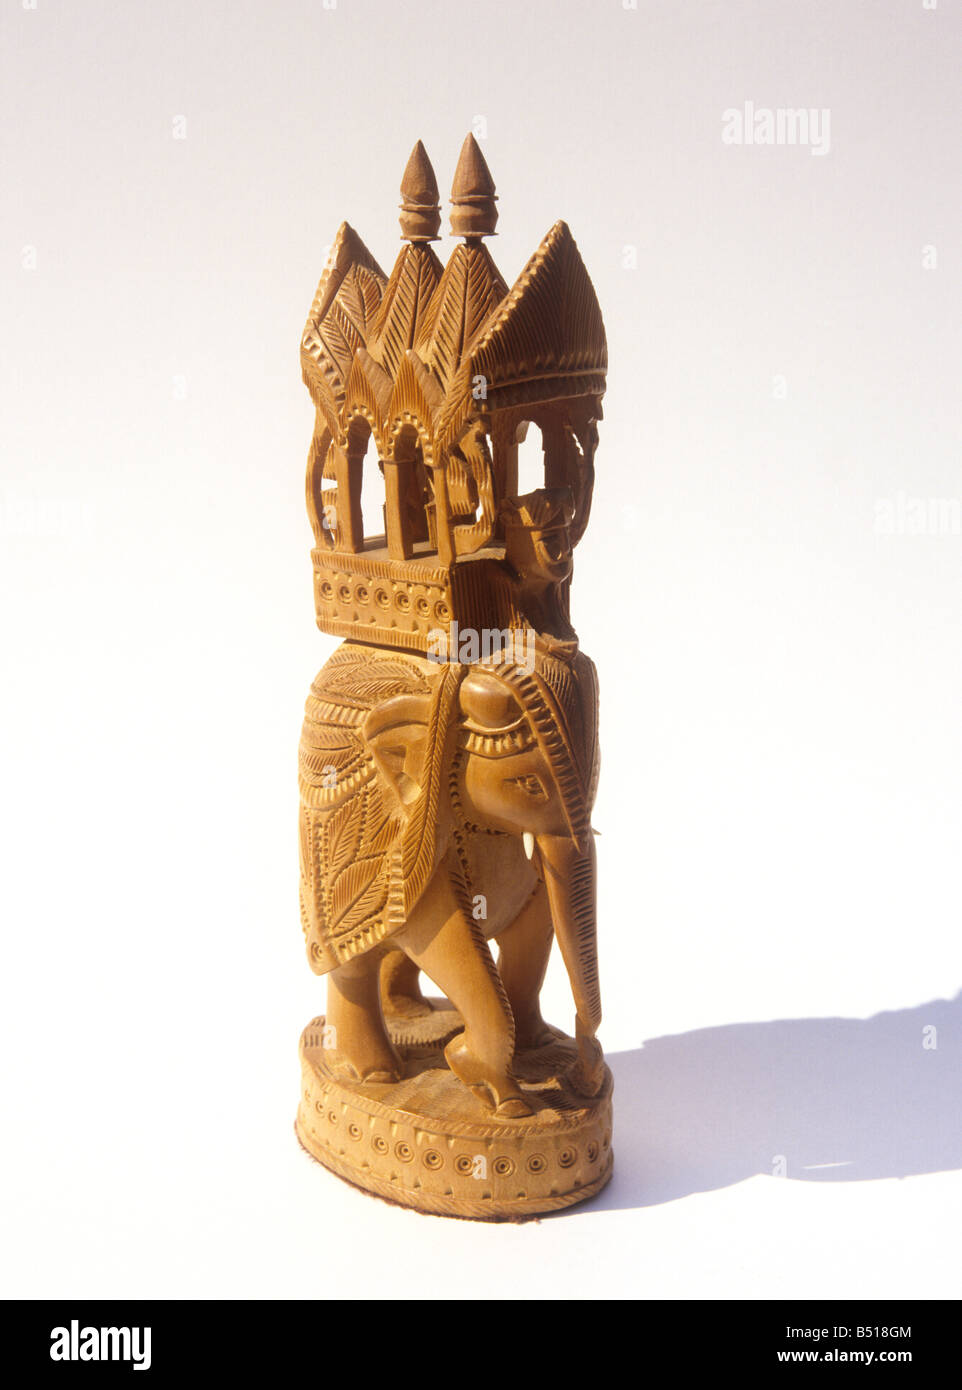 Indian crafts sandalwood carving of caparisoned elephant from Mysore Karnataka Stock Photo